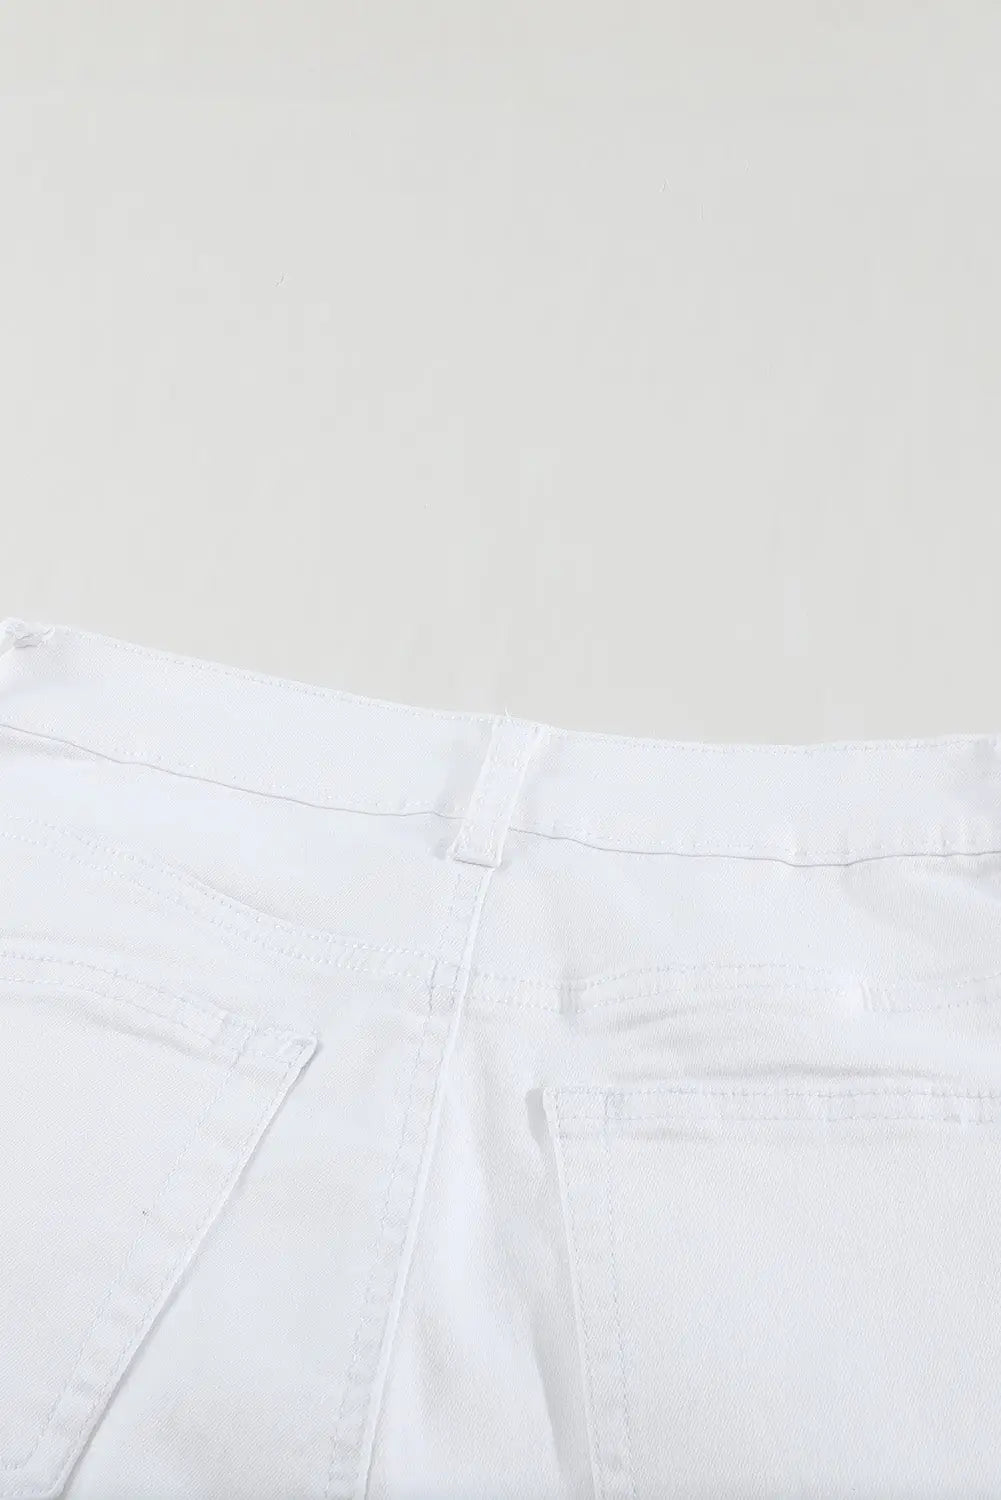 Green plain high waist buttons frayed cropped denim jeans